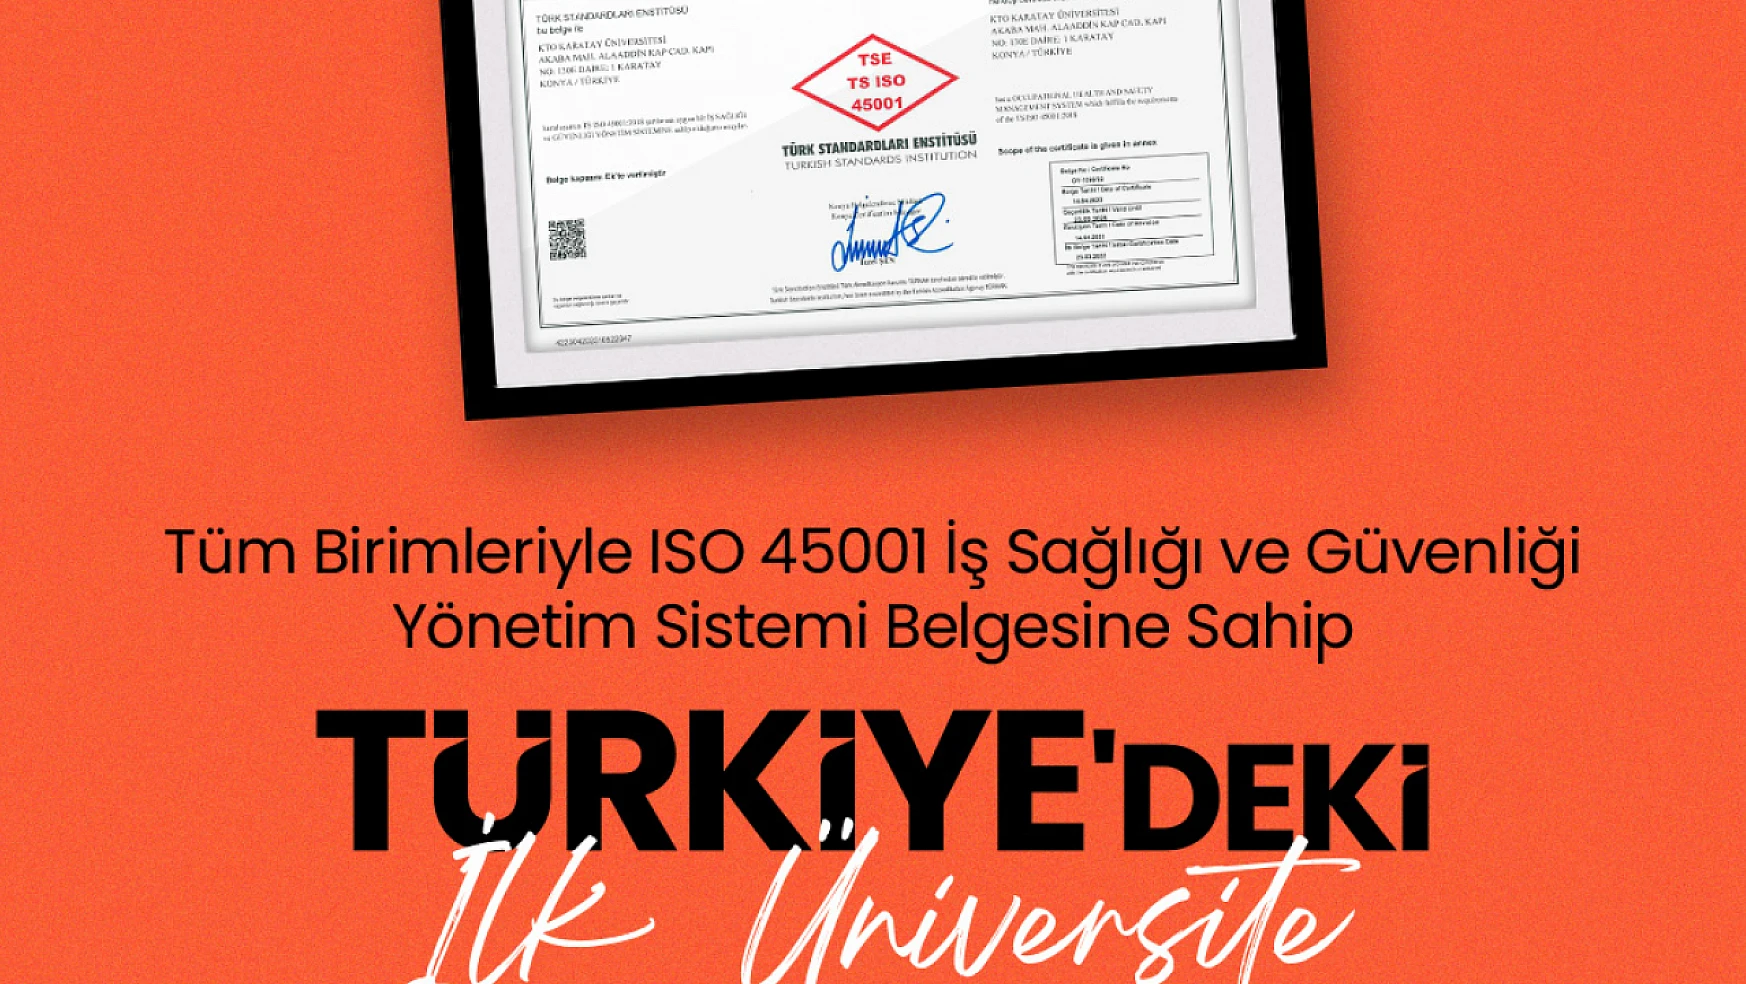 Konya Karatay Üniversitesi'nden Türkiye'de bir ilk!